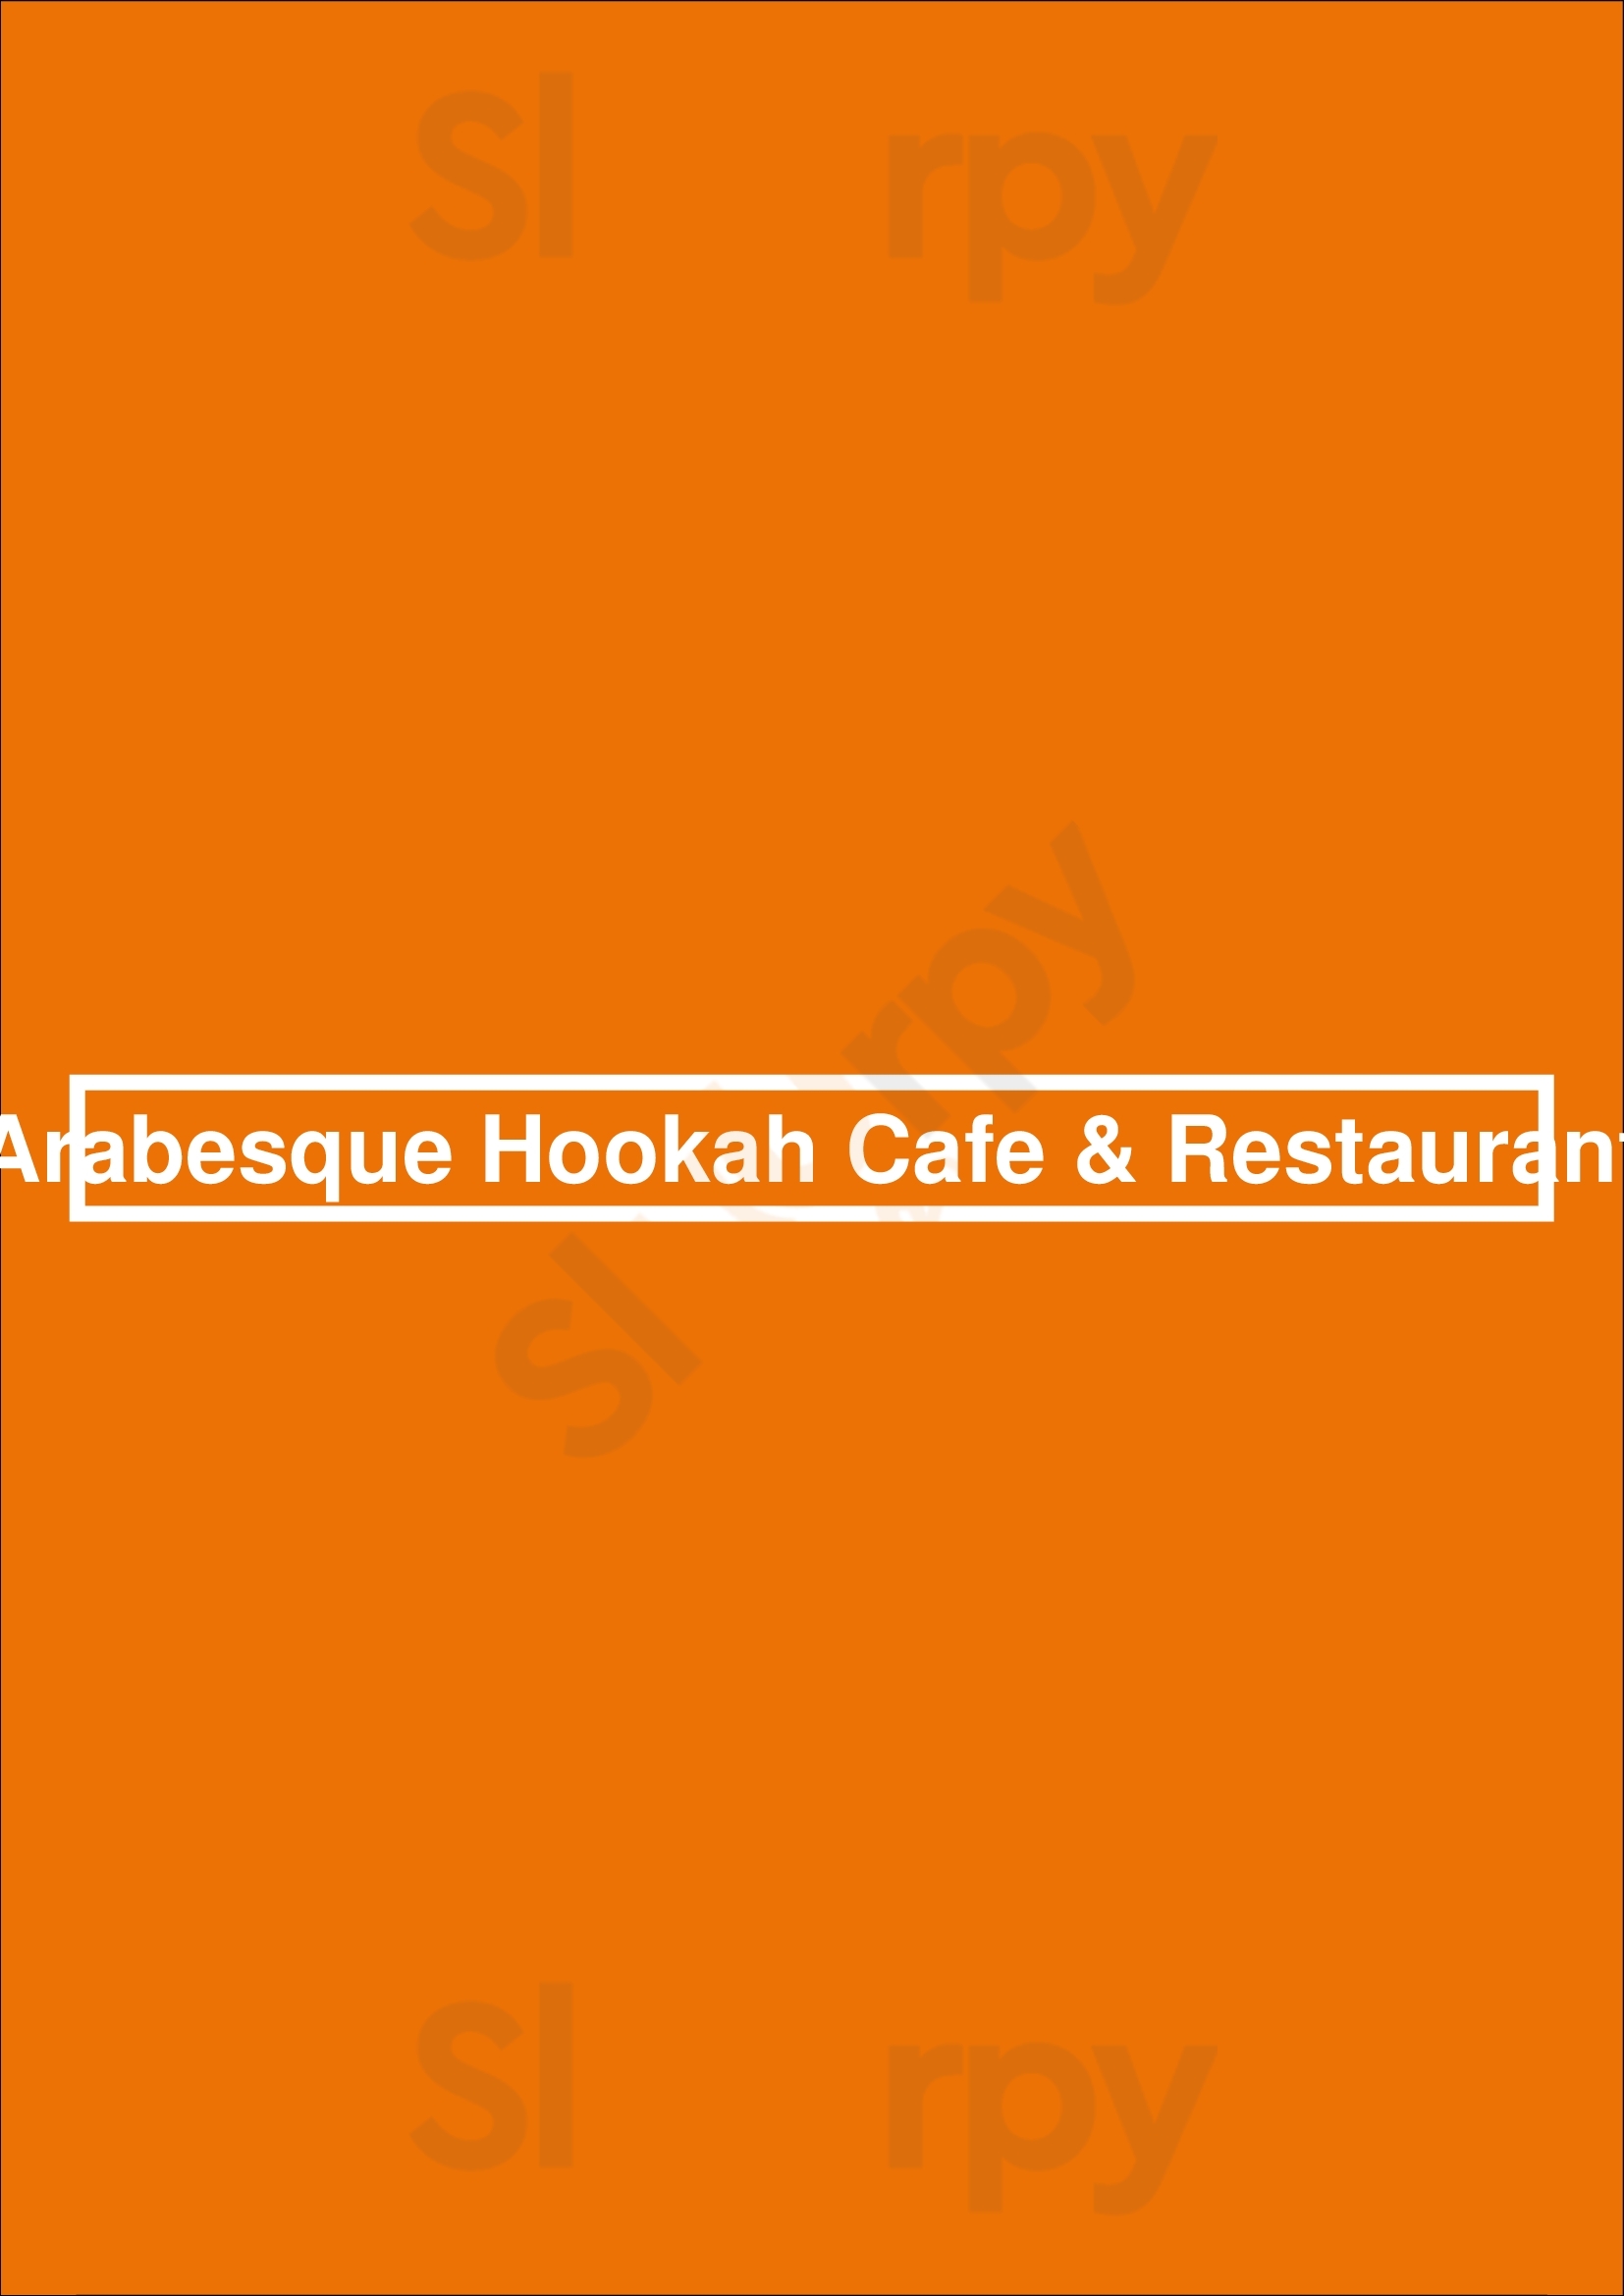 Arabesque Hookah Cafe & Restaurant Winnipeg Menu - 1